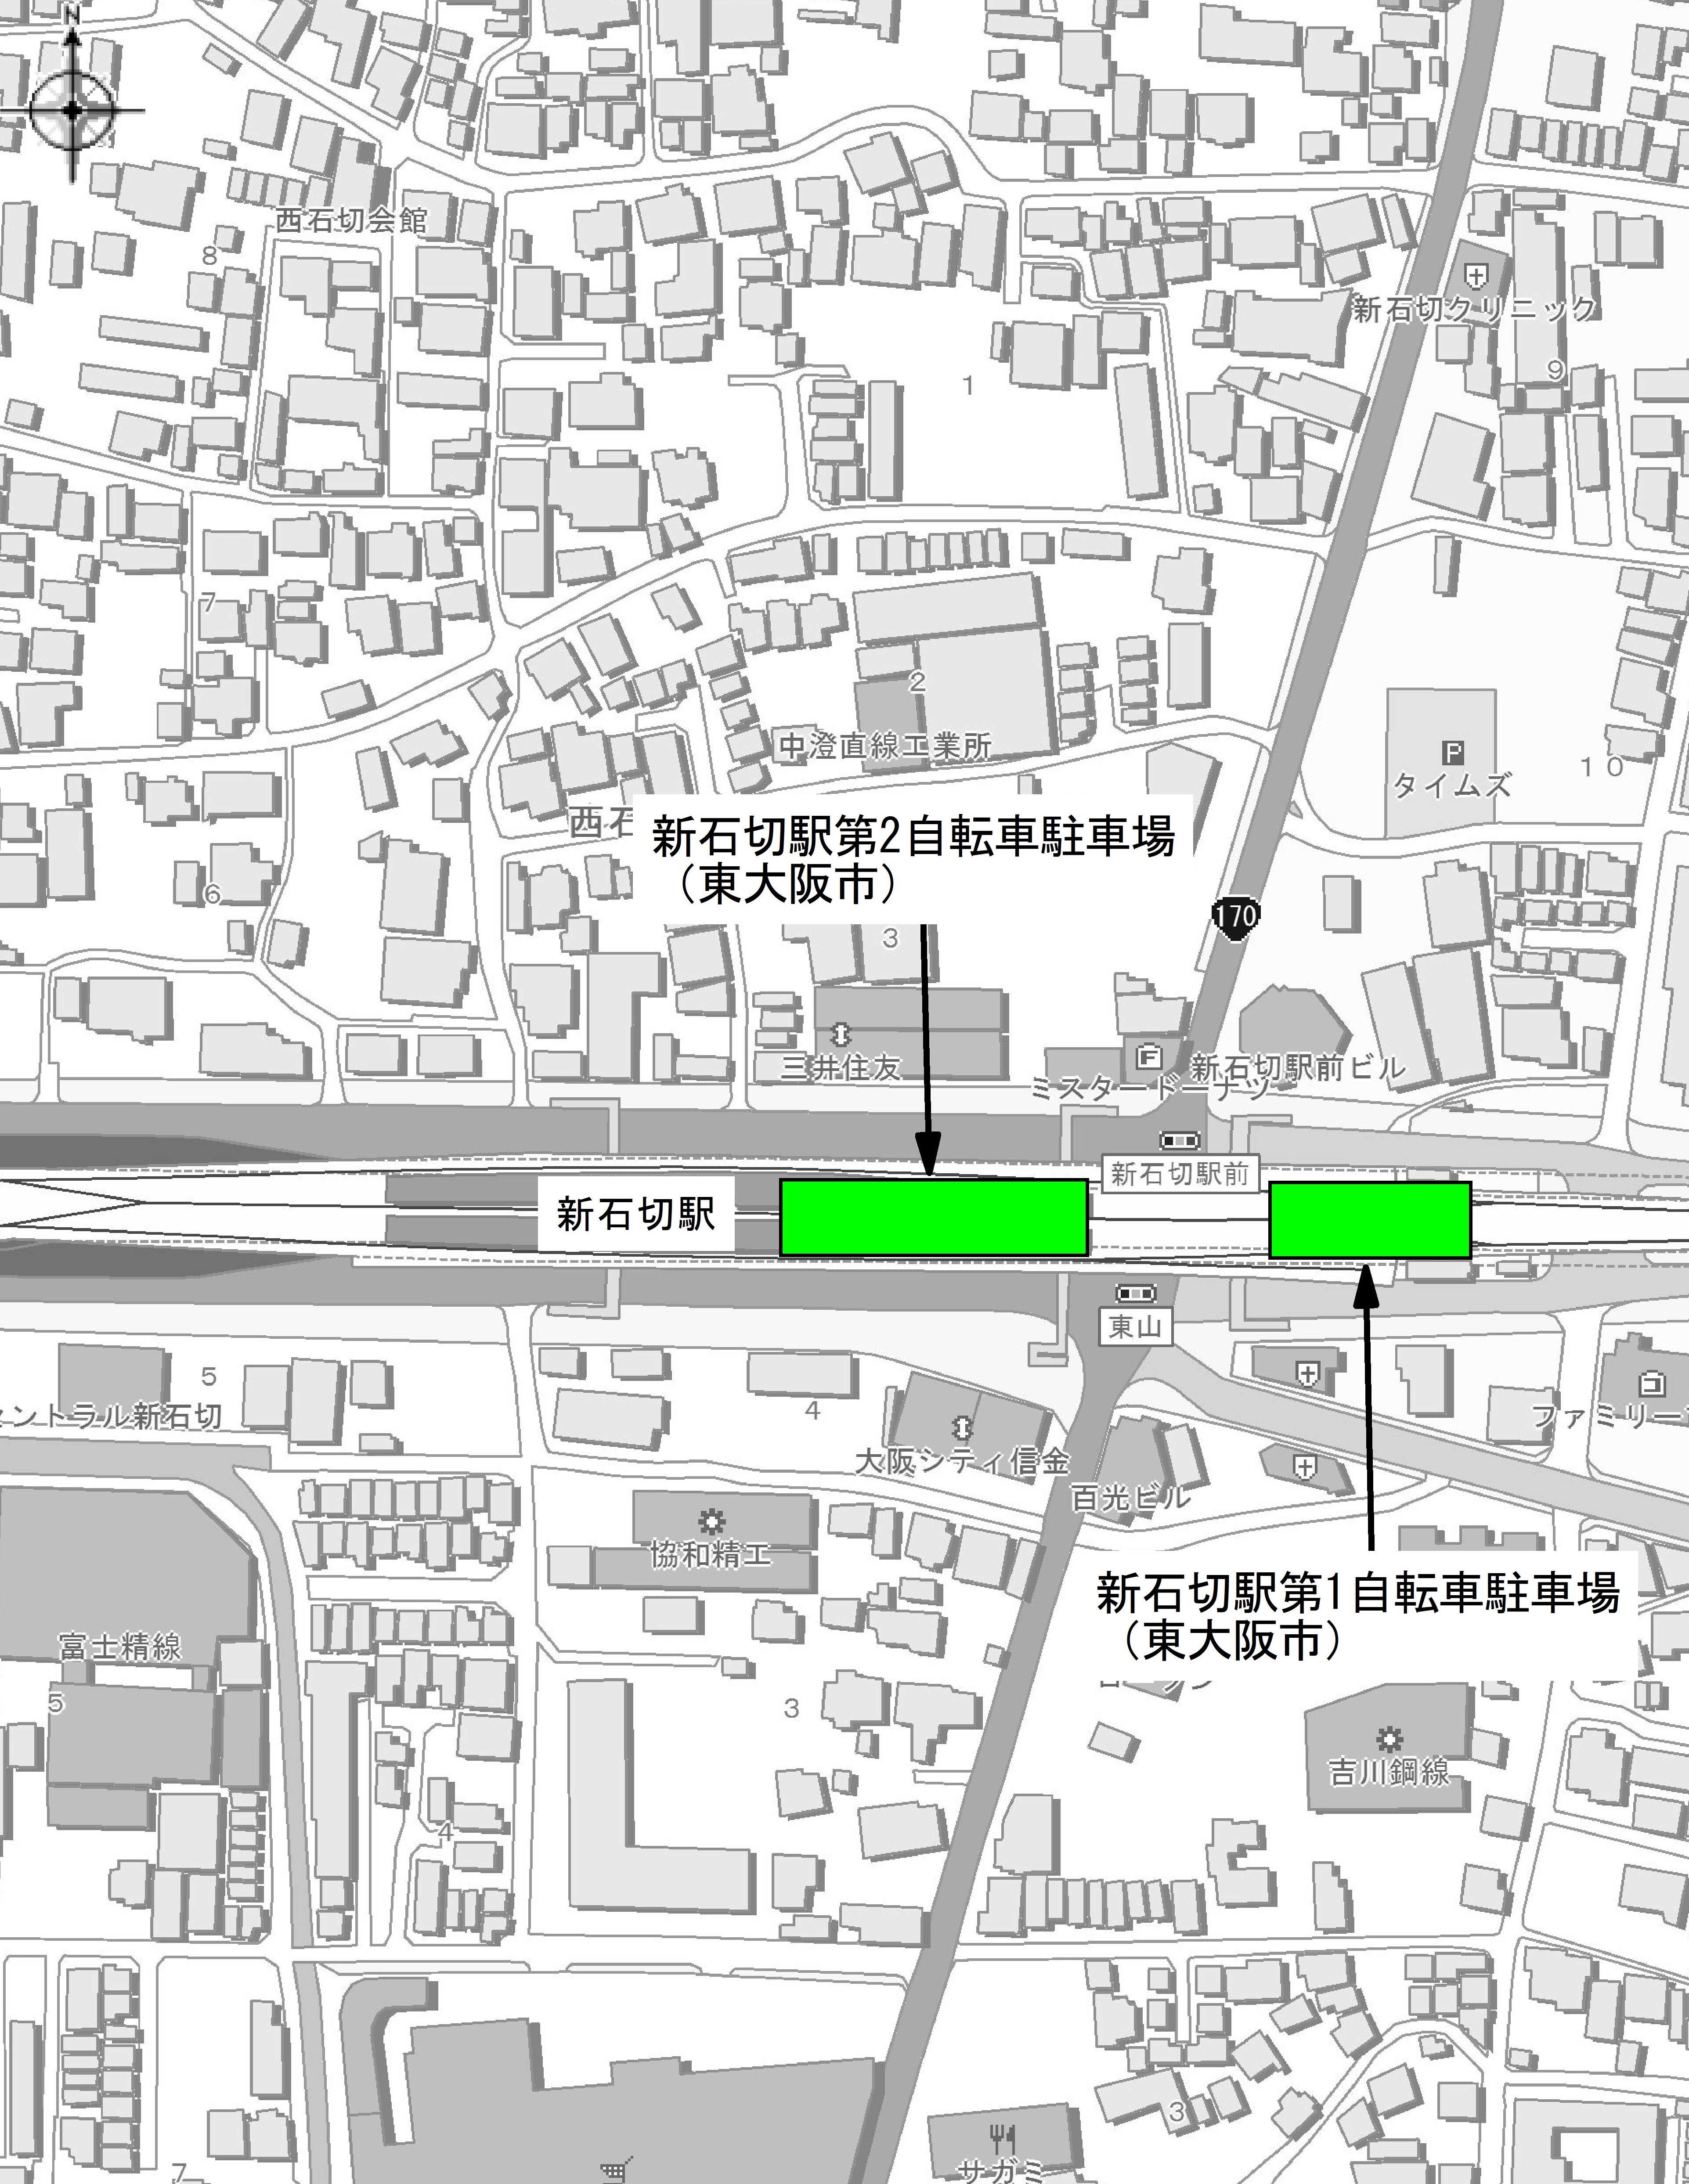 新石切駅周辺自転車駐車場案内図